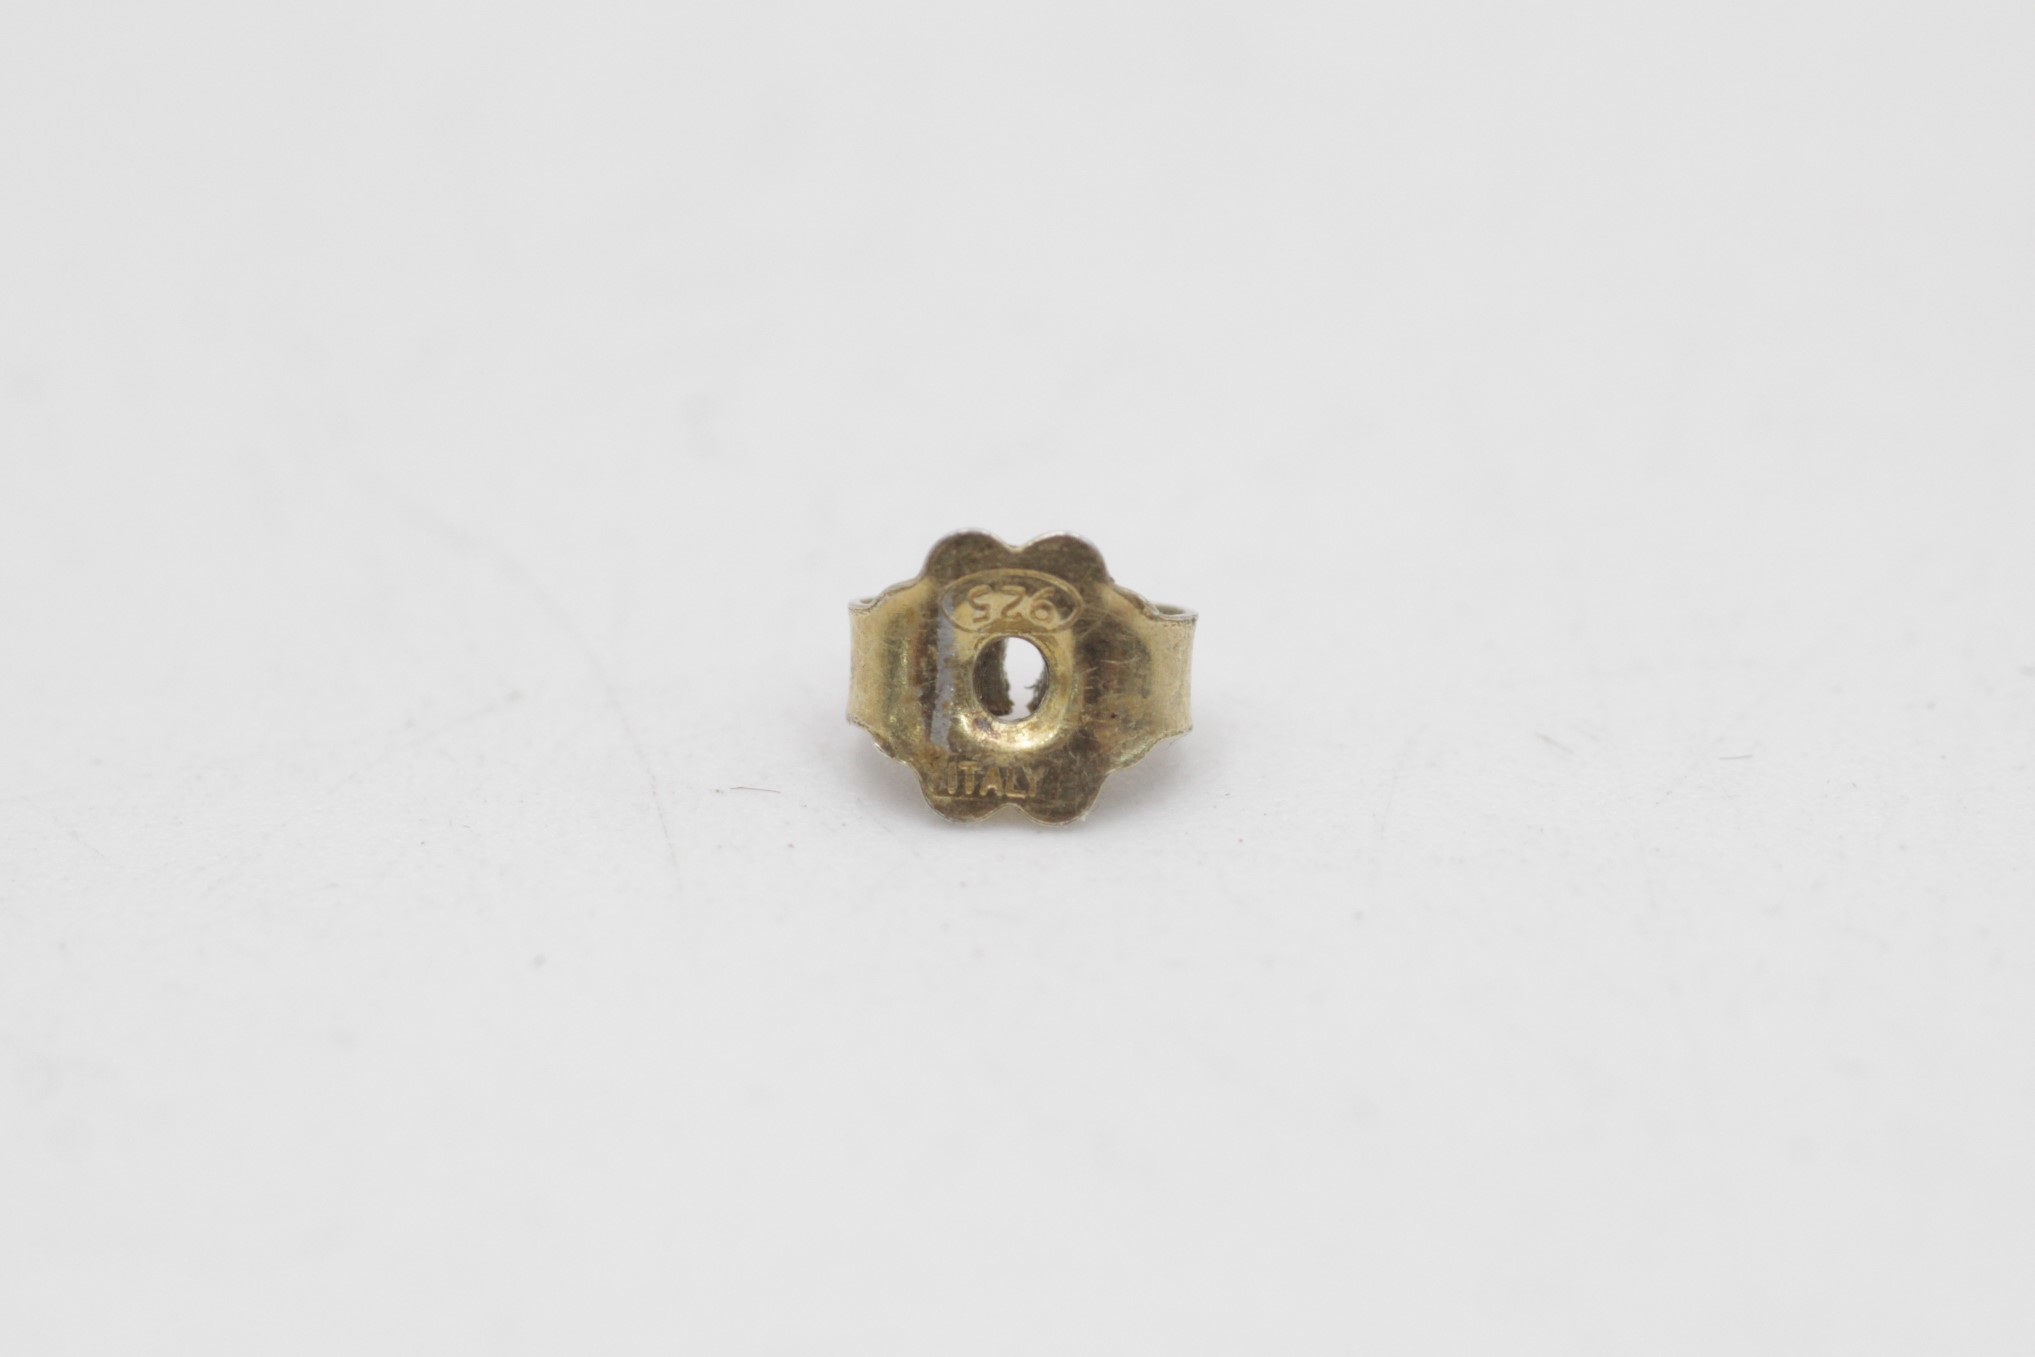 9ct gold vintage diamond channel half-hoop earrings (3.6g) - Image 5 of 6